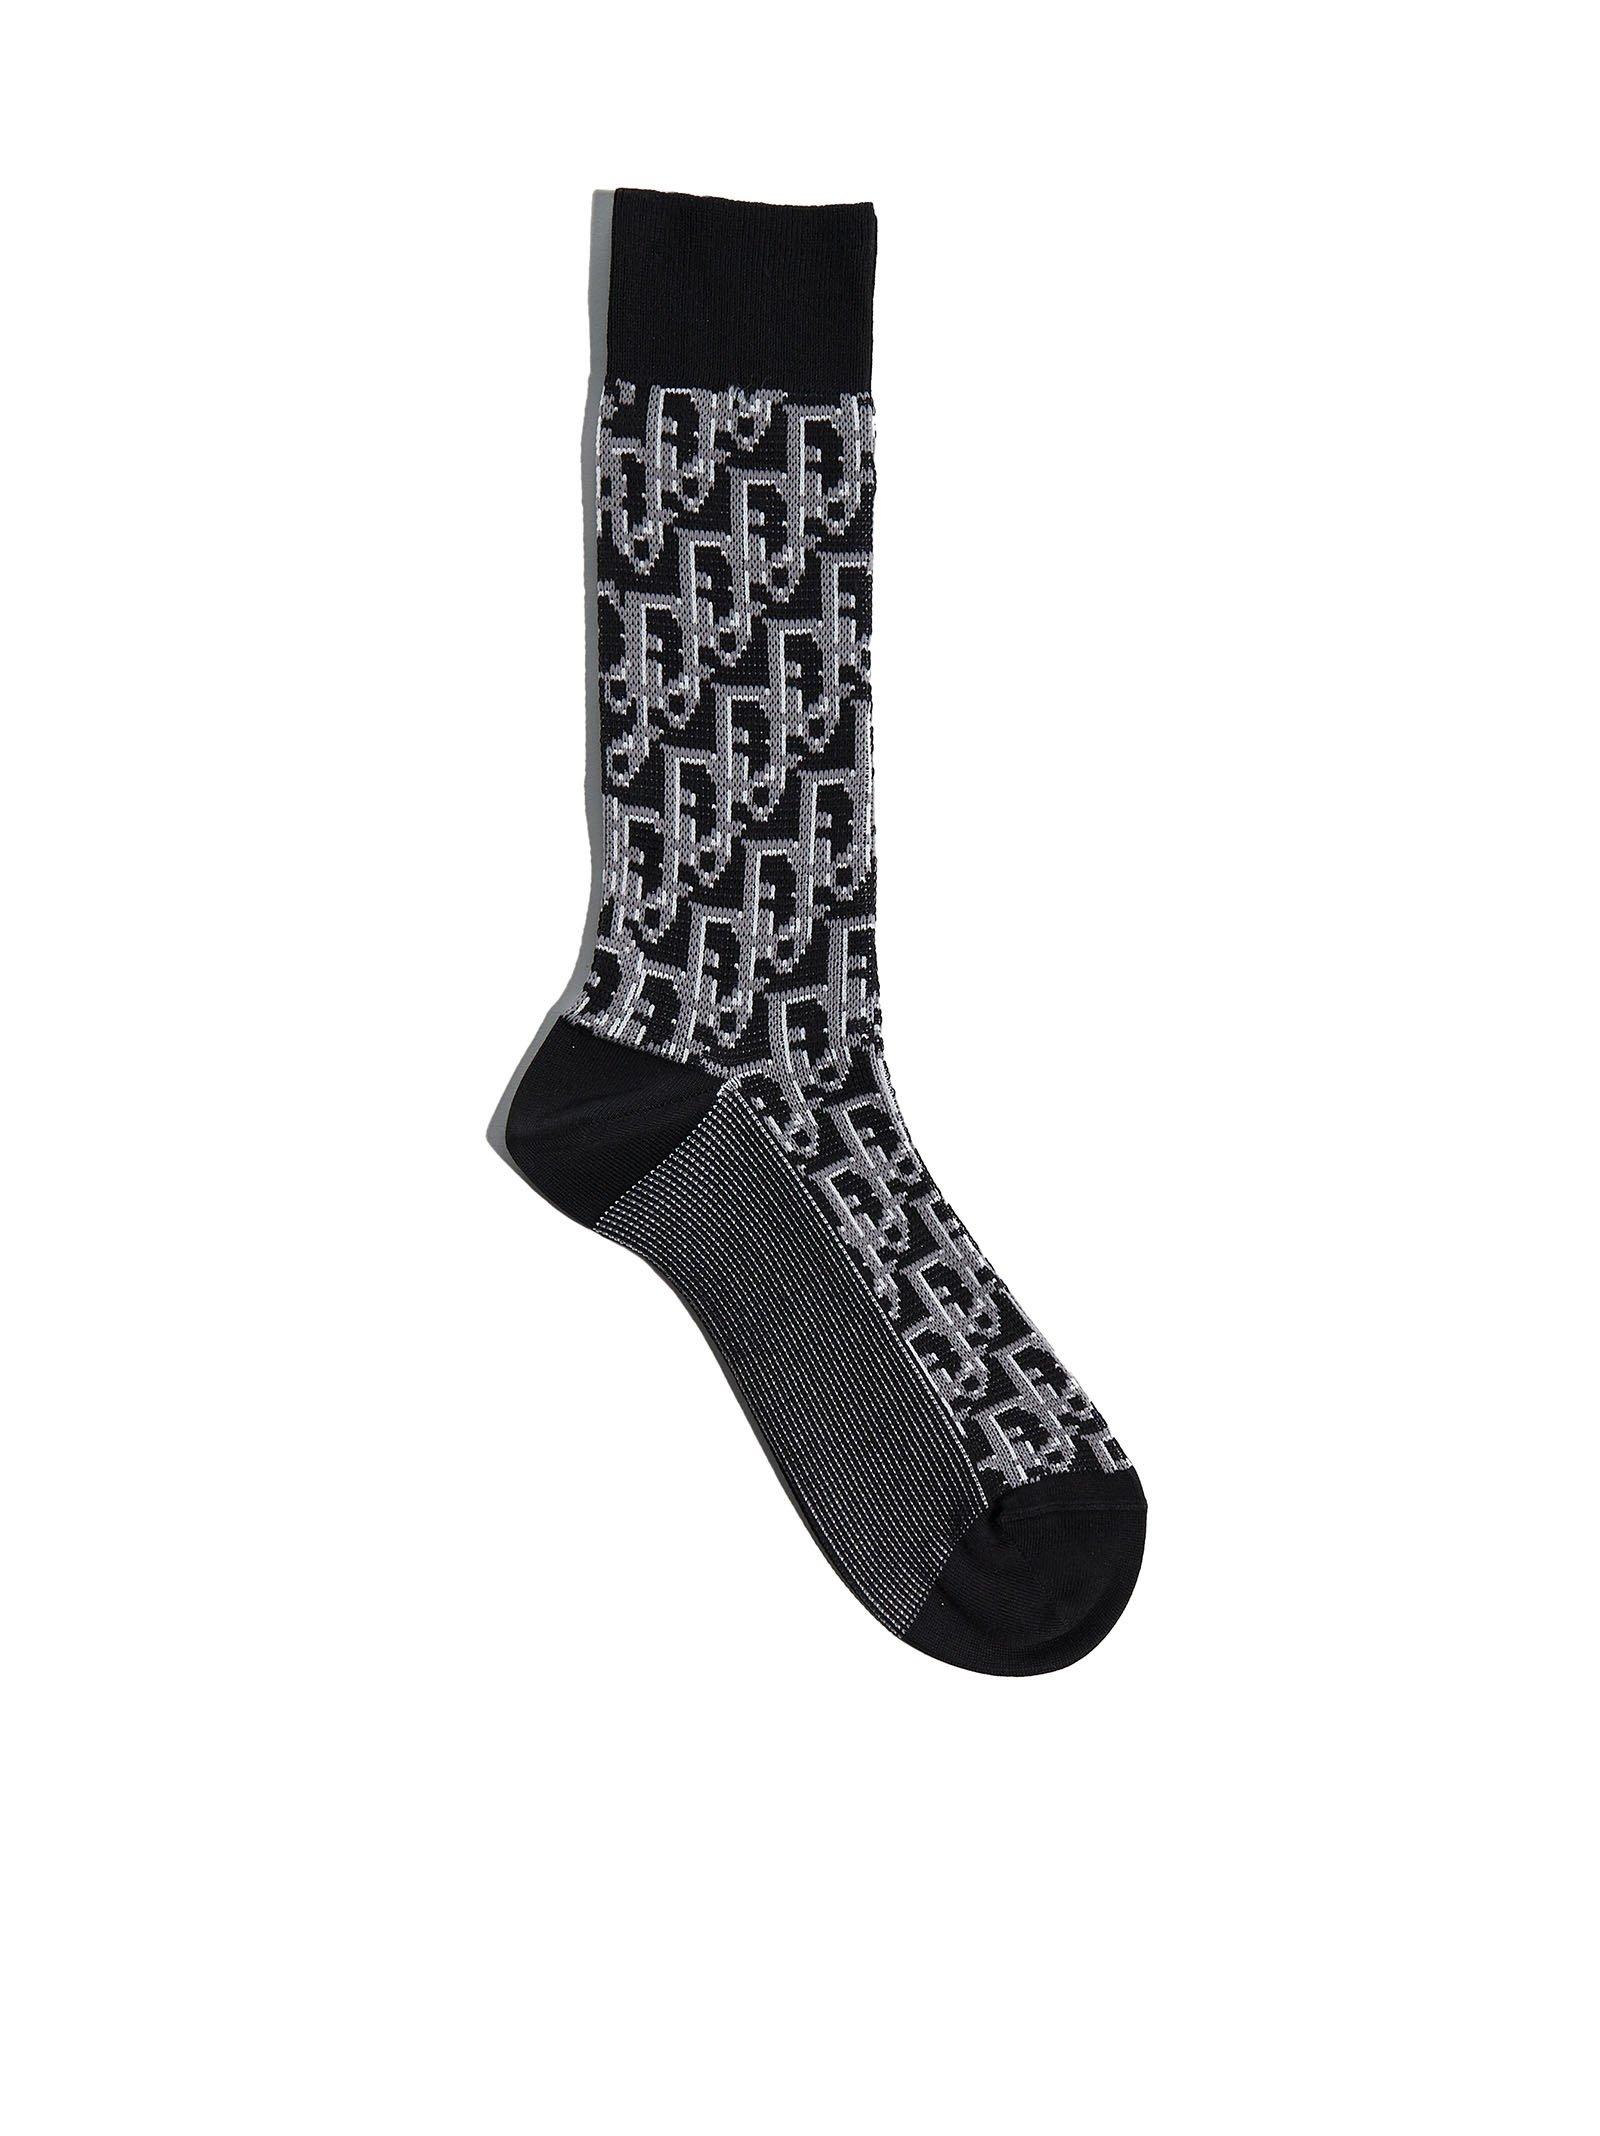 https://cdna.lystit.com/photos/cettire/a136cf77/dior-Black-Oblique-Intarsia-Socks.jpeg